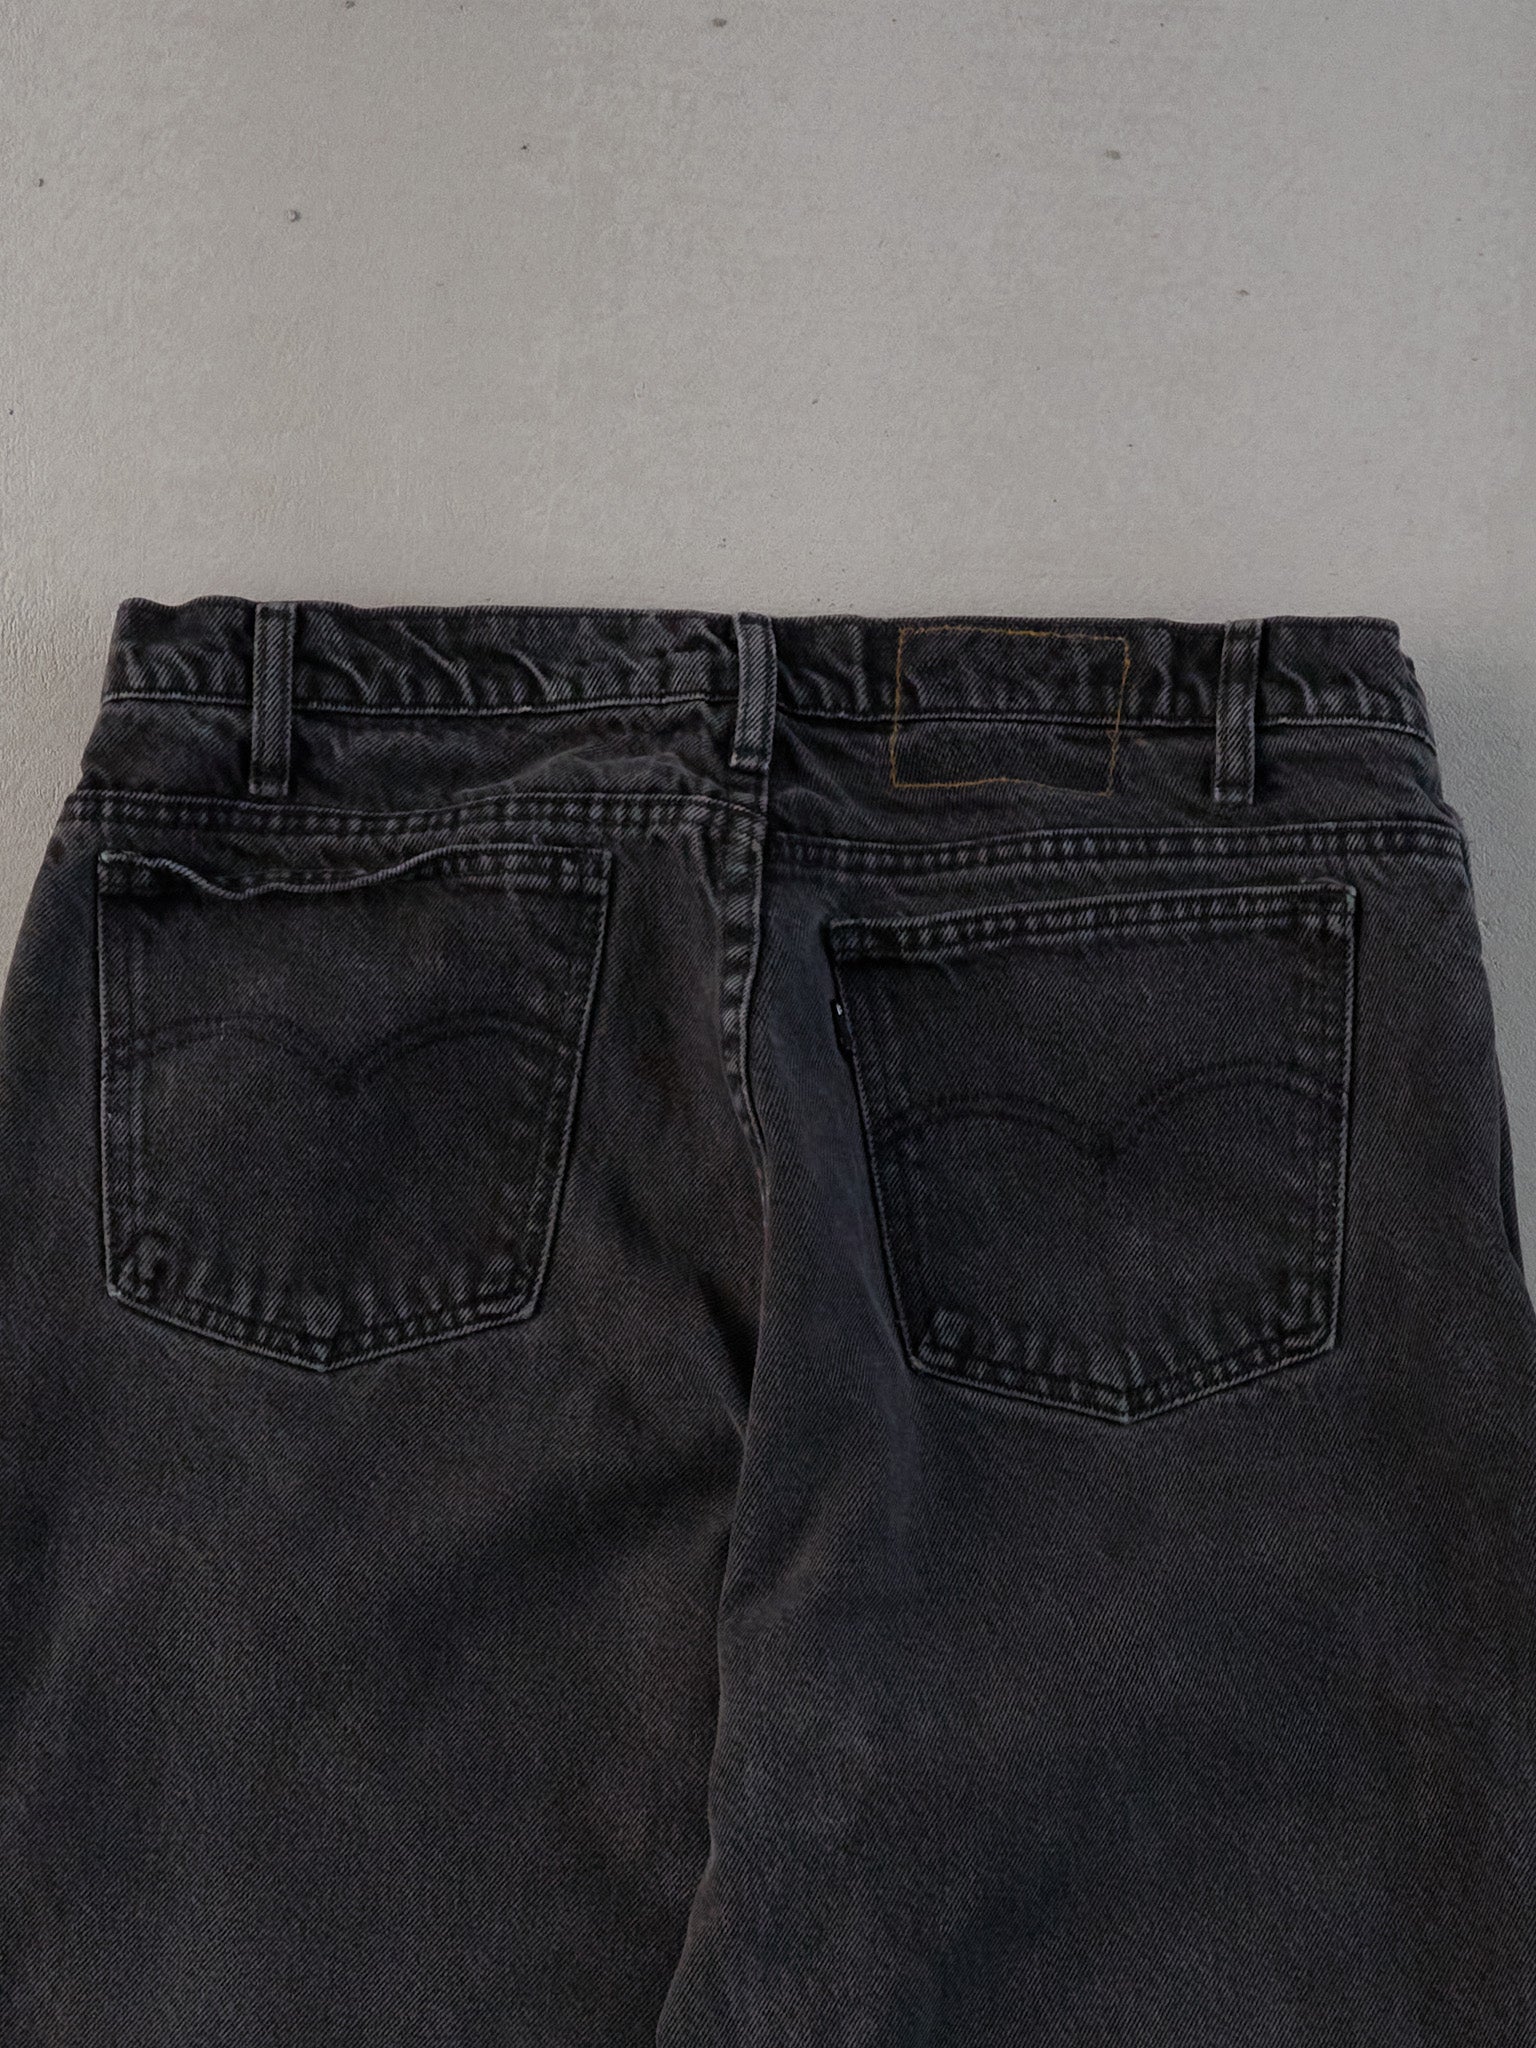 Vintage 90s Black Levi's Denim Jeans (31x26)